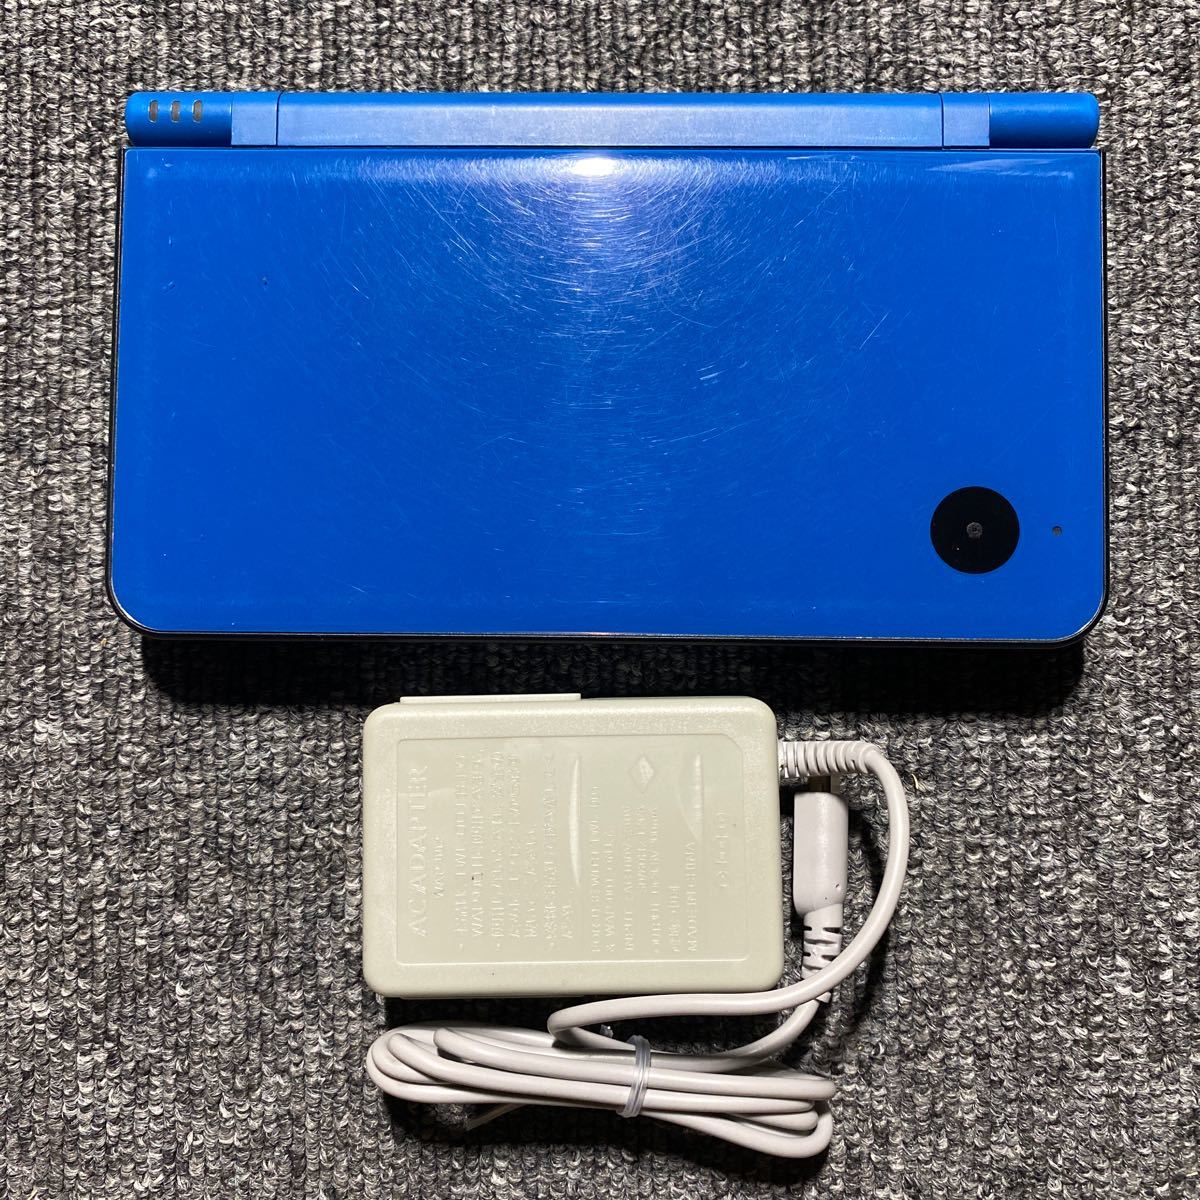 DS ニンテンドーDSi LL ブルー 充電器付き WJF117135879